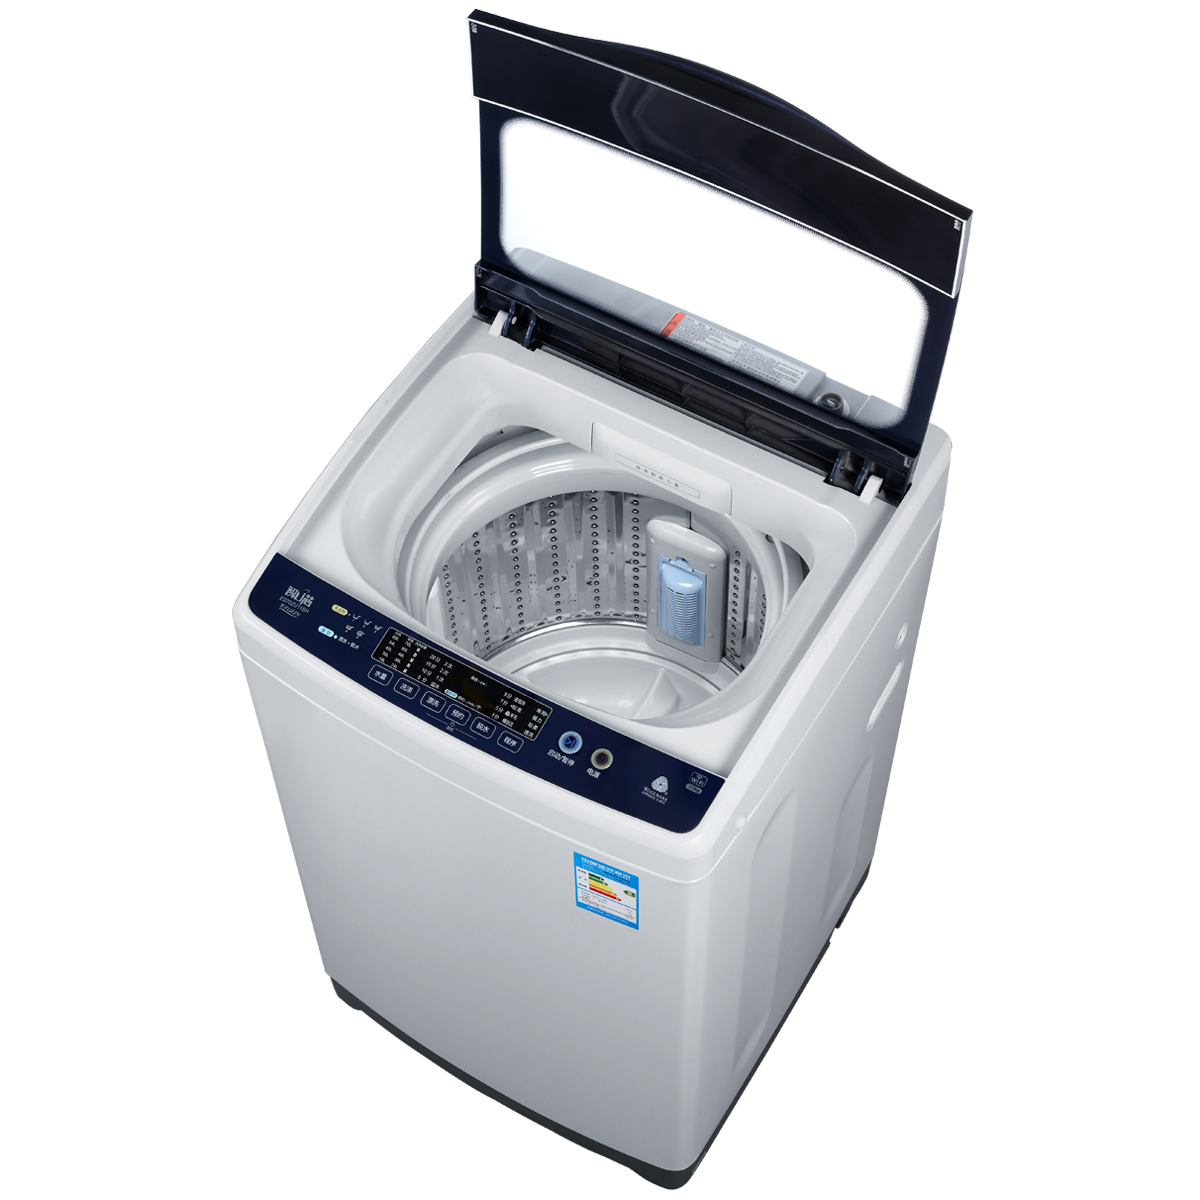 海尔Haier洗衣机 EB80BM929 说明书 | 说明书网